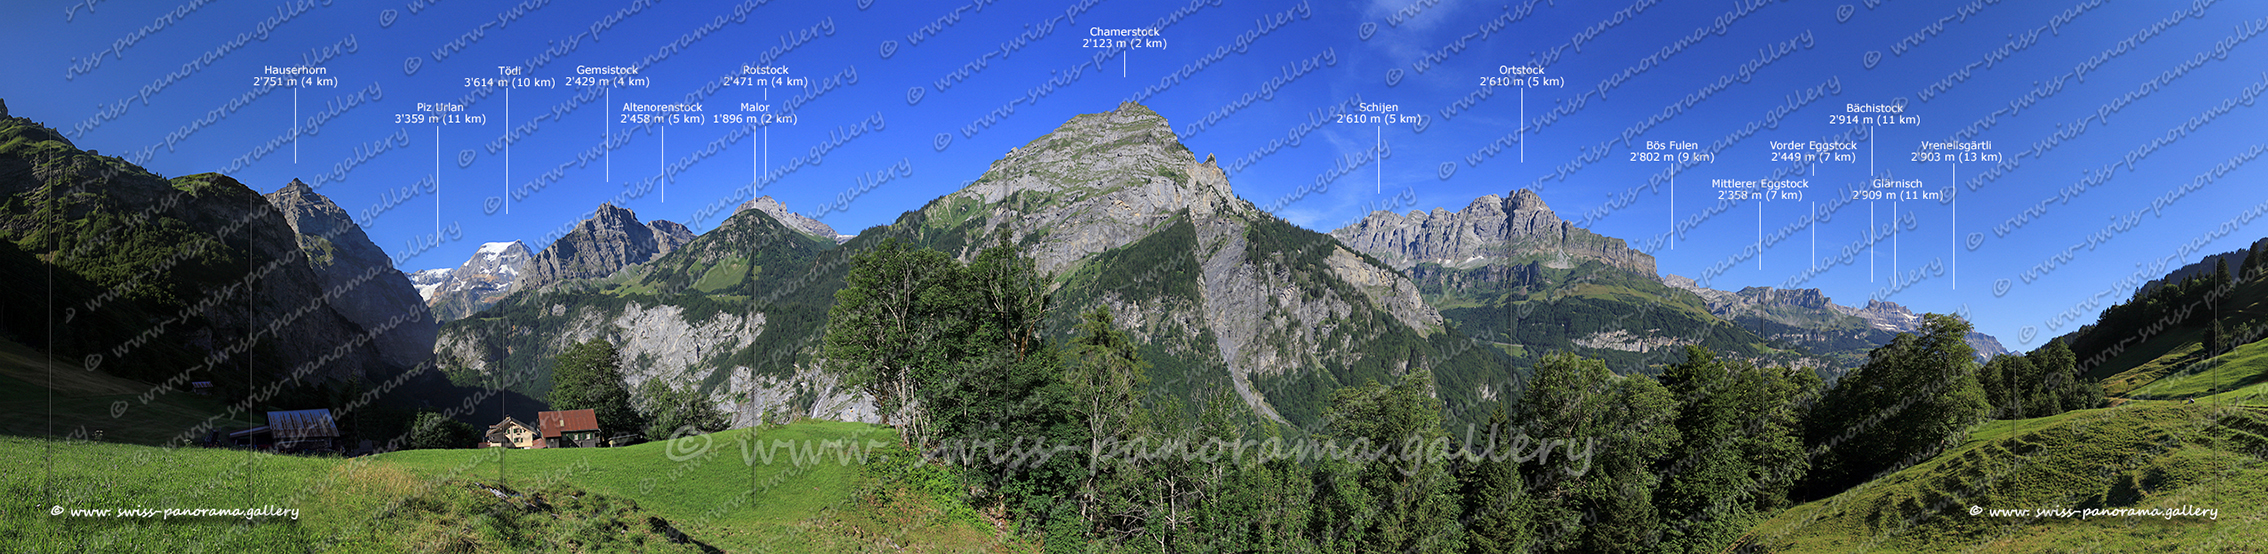 Switzerland Tierfehd panorama